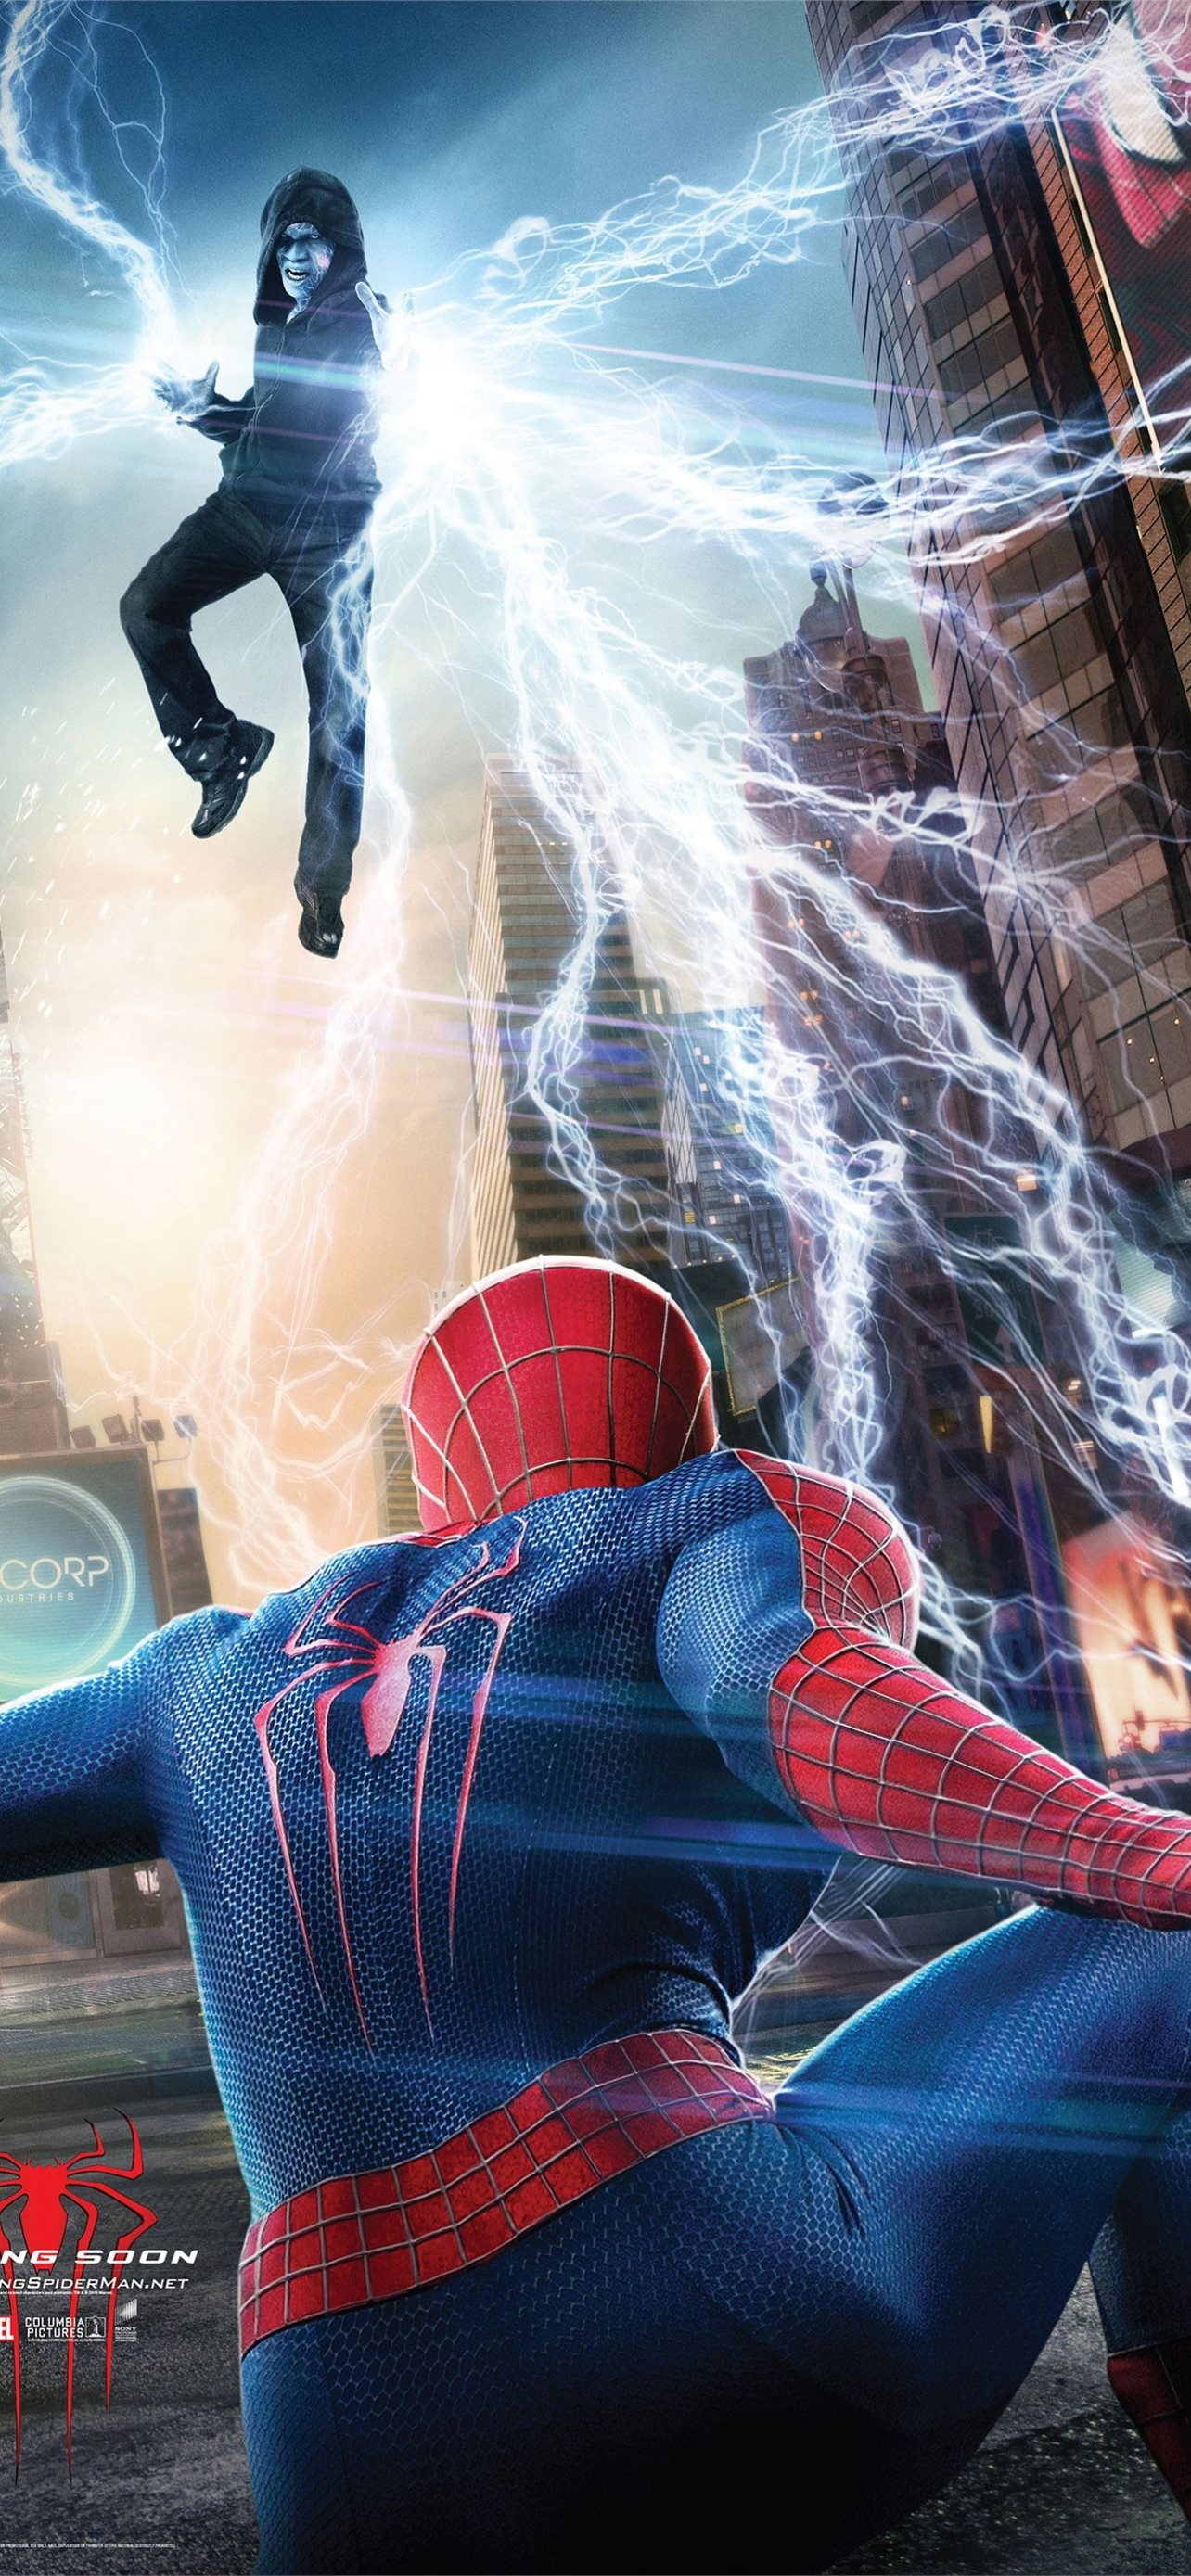 The Amazing Spider Man 2 mang đến cho người xem cảm giác đuổi bắt tội phạm, vượt qua các thử thách và giải cứu thành phố! Nhấn vào hình ảnh và thưởng thức các trích đoạn hành động đầy kịch tính trong bộ phim bom tấn này.